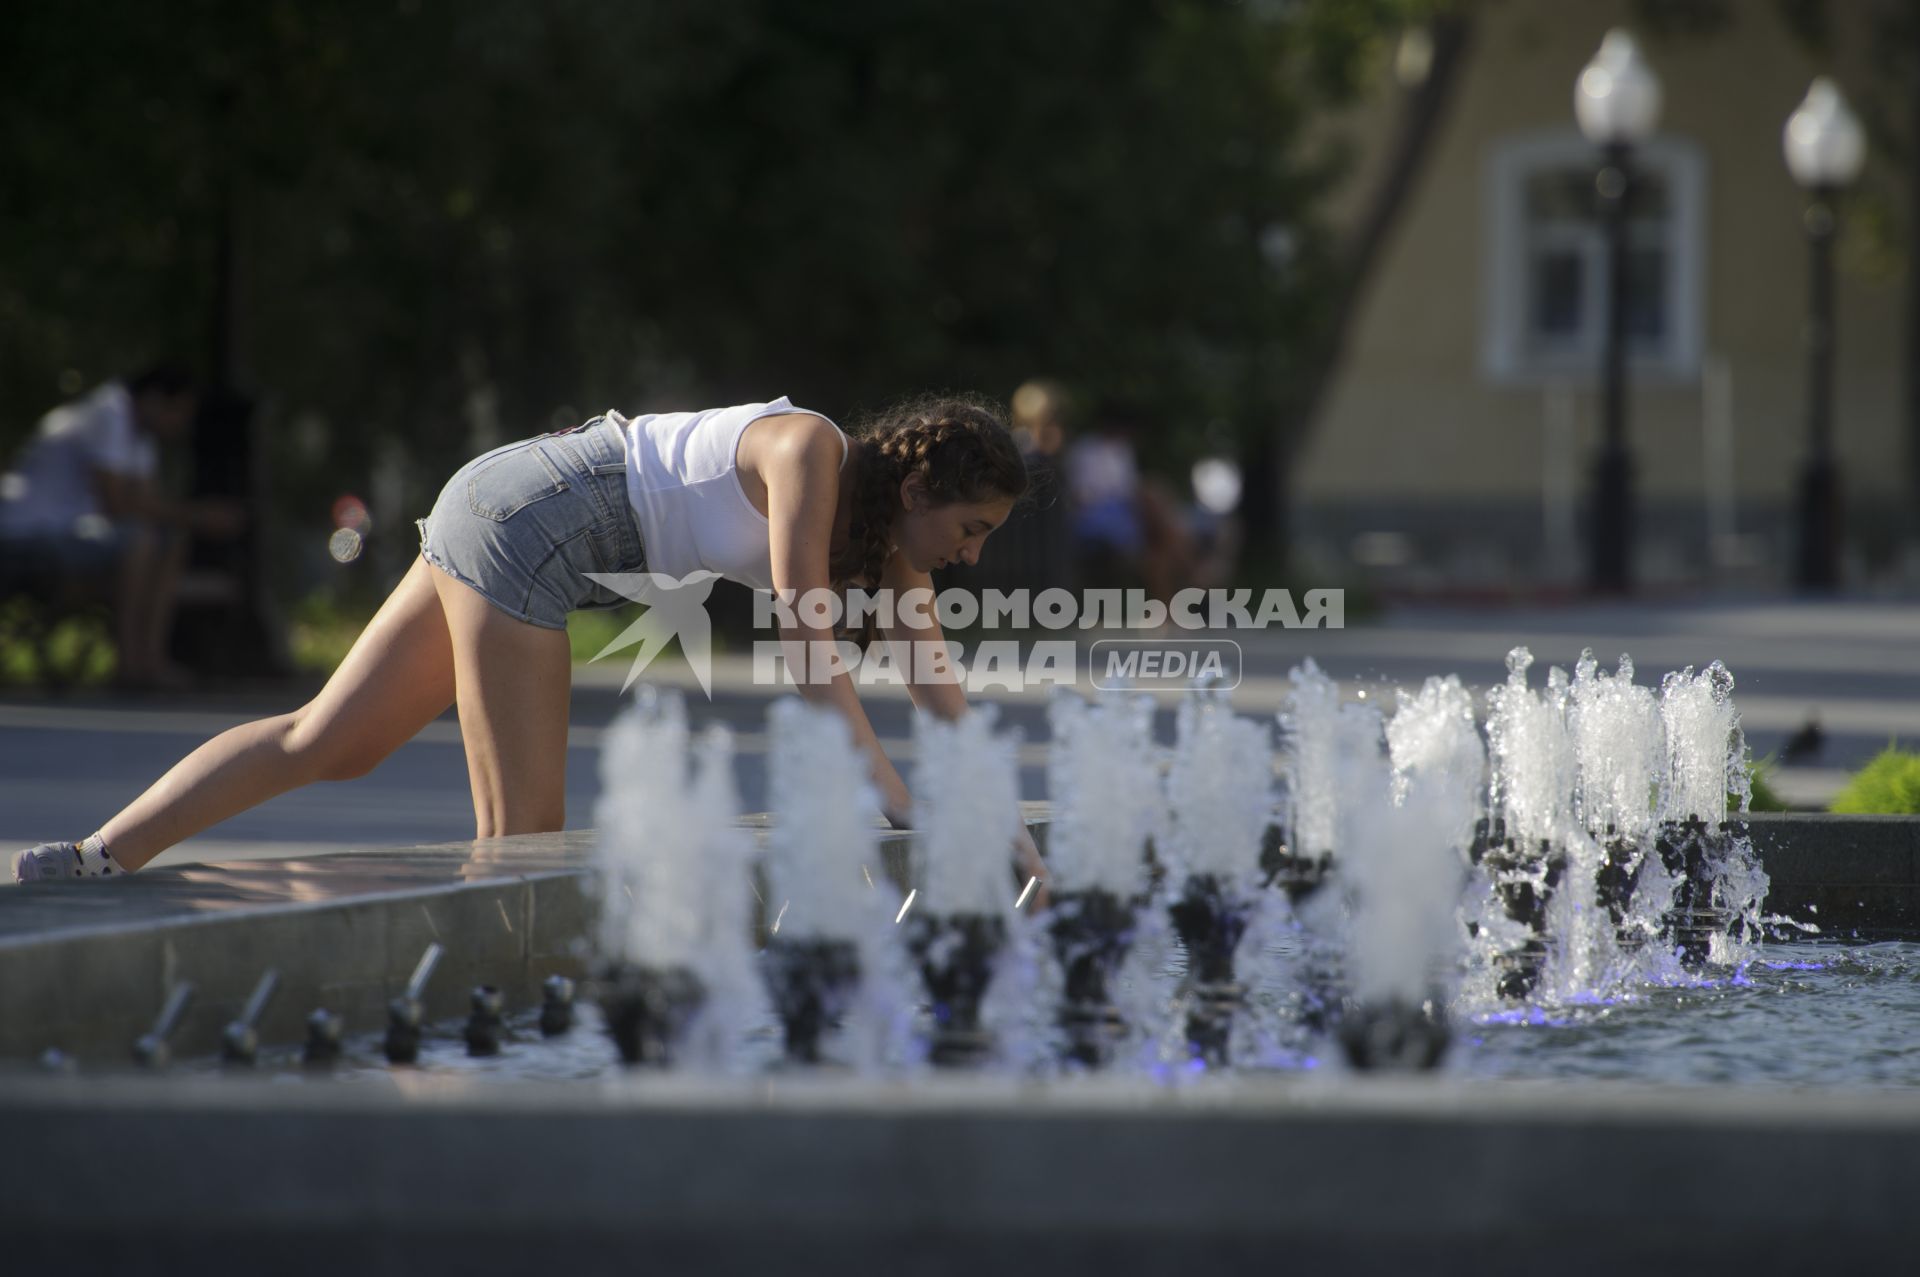 Екатеринбург. Девушка у фонтана в сквере Попова во время летней жары